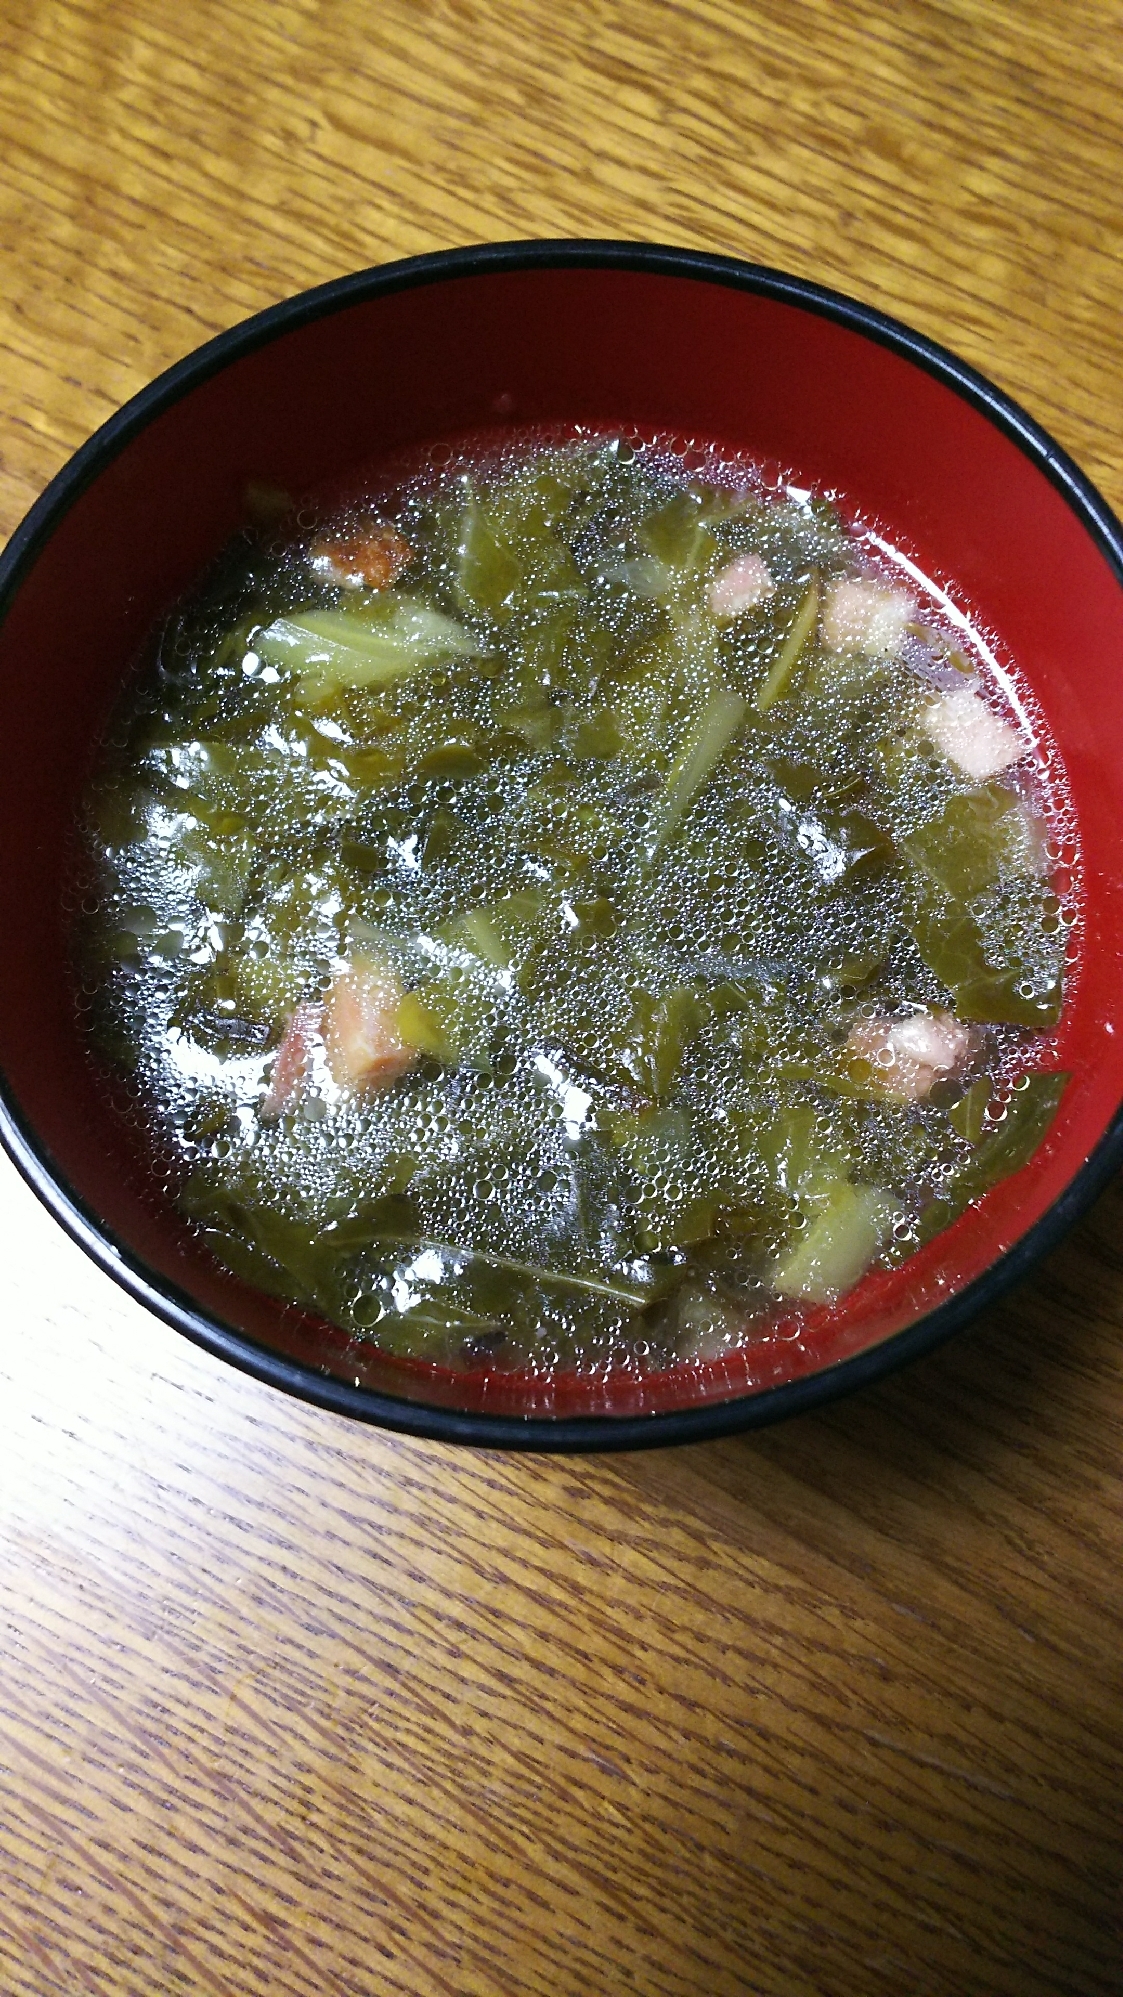 キャベツの外葉とベーコンの生姜スープ